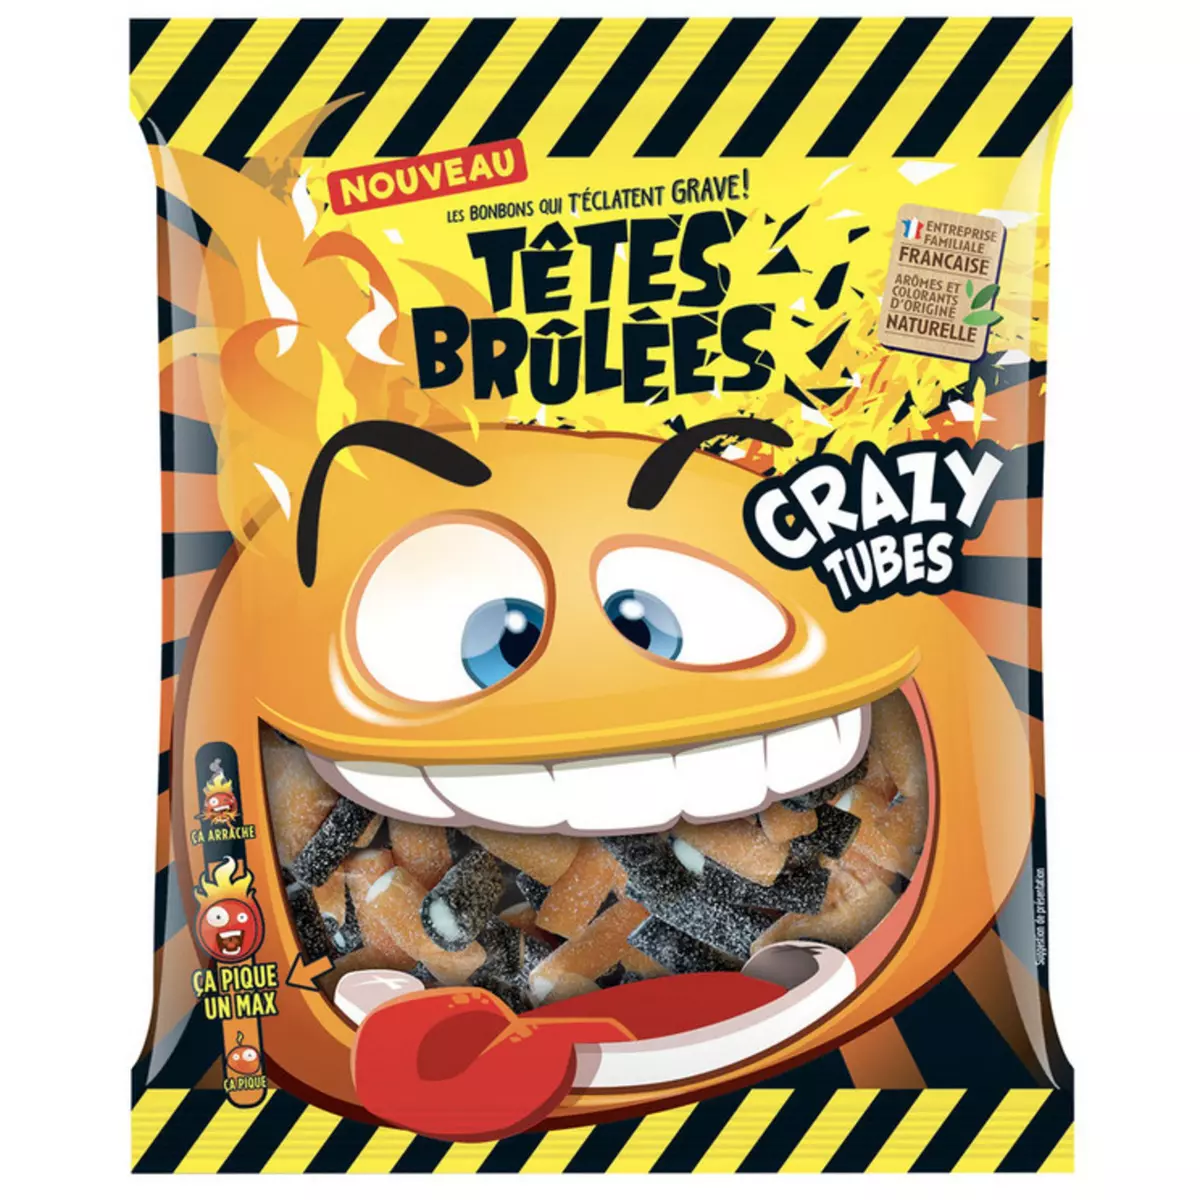 TÊTES BRÛLÉES Crazy tubes bonbons piquants 180g